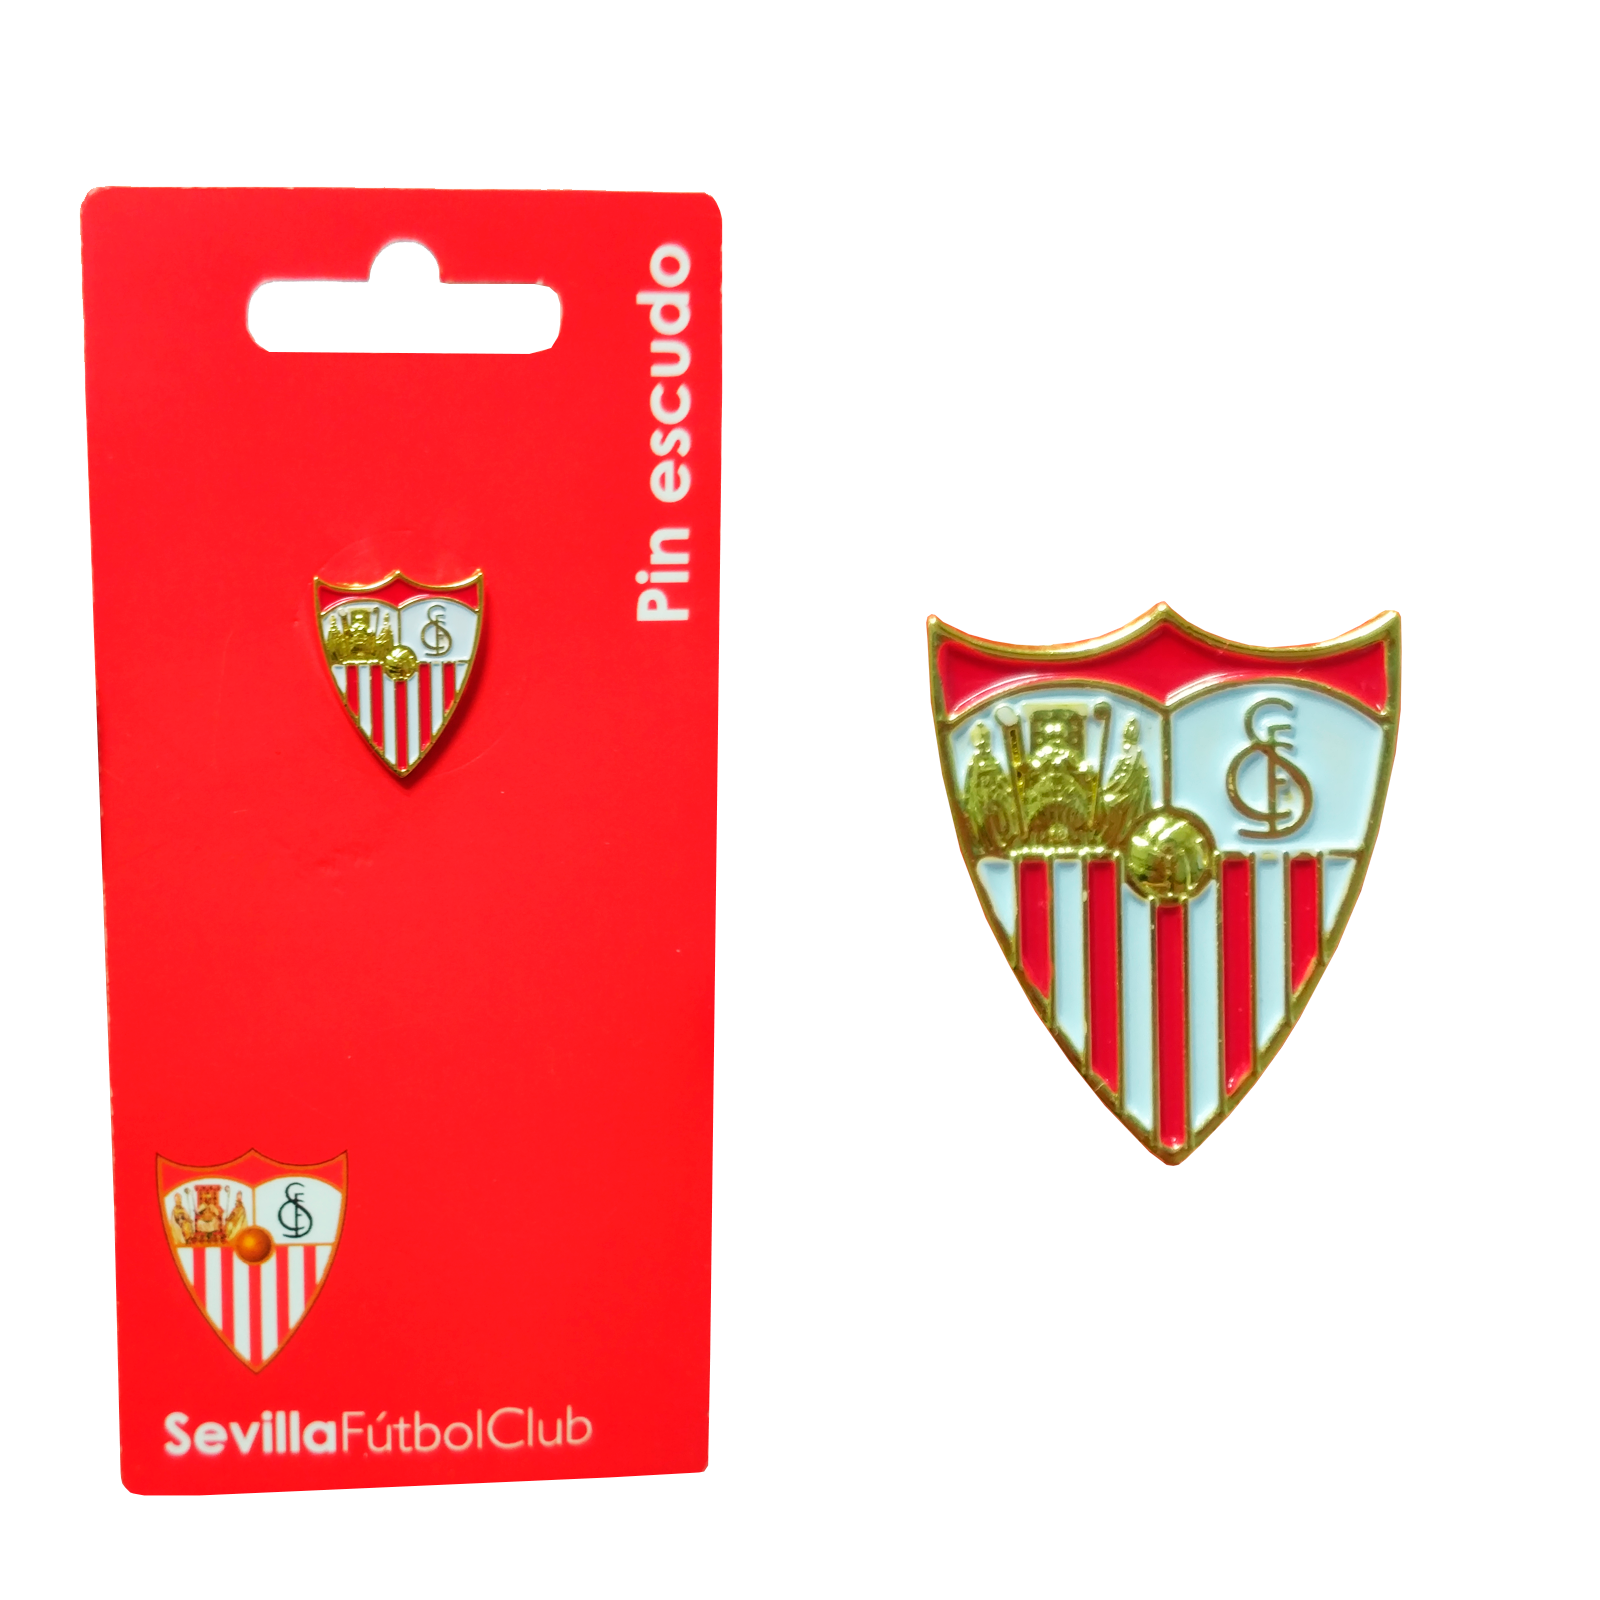 Banderín 1890 Oficial del Sevilla Fútbol Club